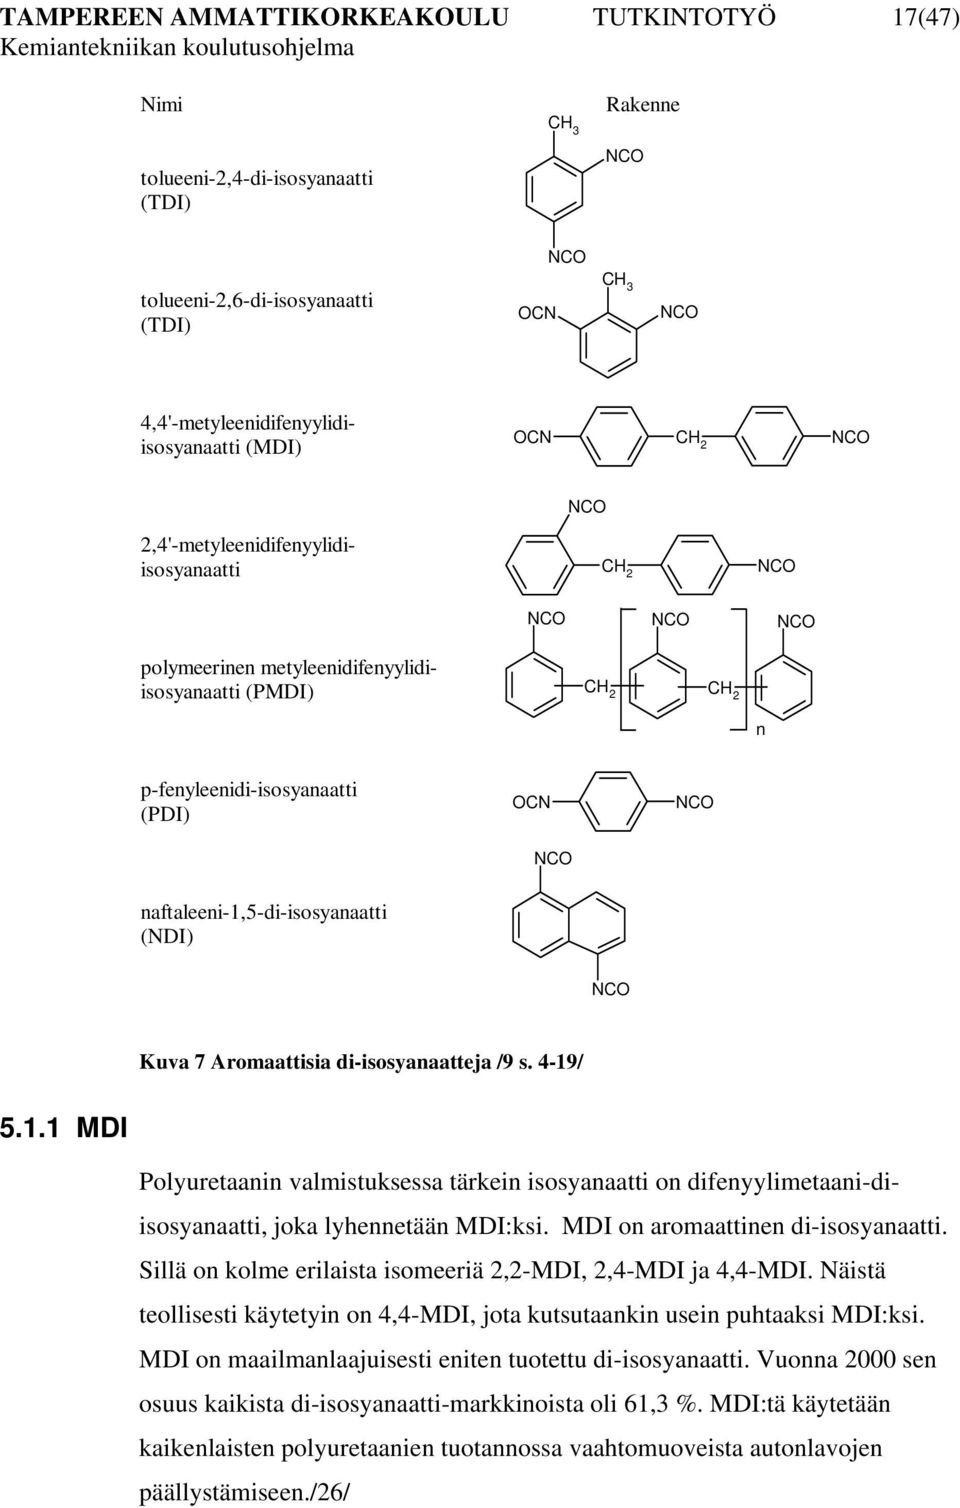 naftaleeni-1,5-di-isosyanaatti (NDI) NCO Kuva 7 Aromaattisia di-isosyanaatteja /9 s. 4-19/ 5.1.1 MDI Polyuretaanin valmistuksessa tärkein isosyanaatti on difenyylimetaani-diisosyanaatti, joka lyhennetään MDI:ksi.